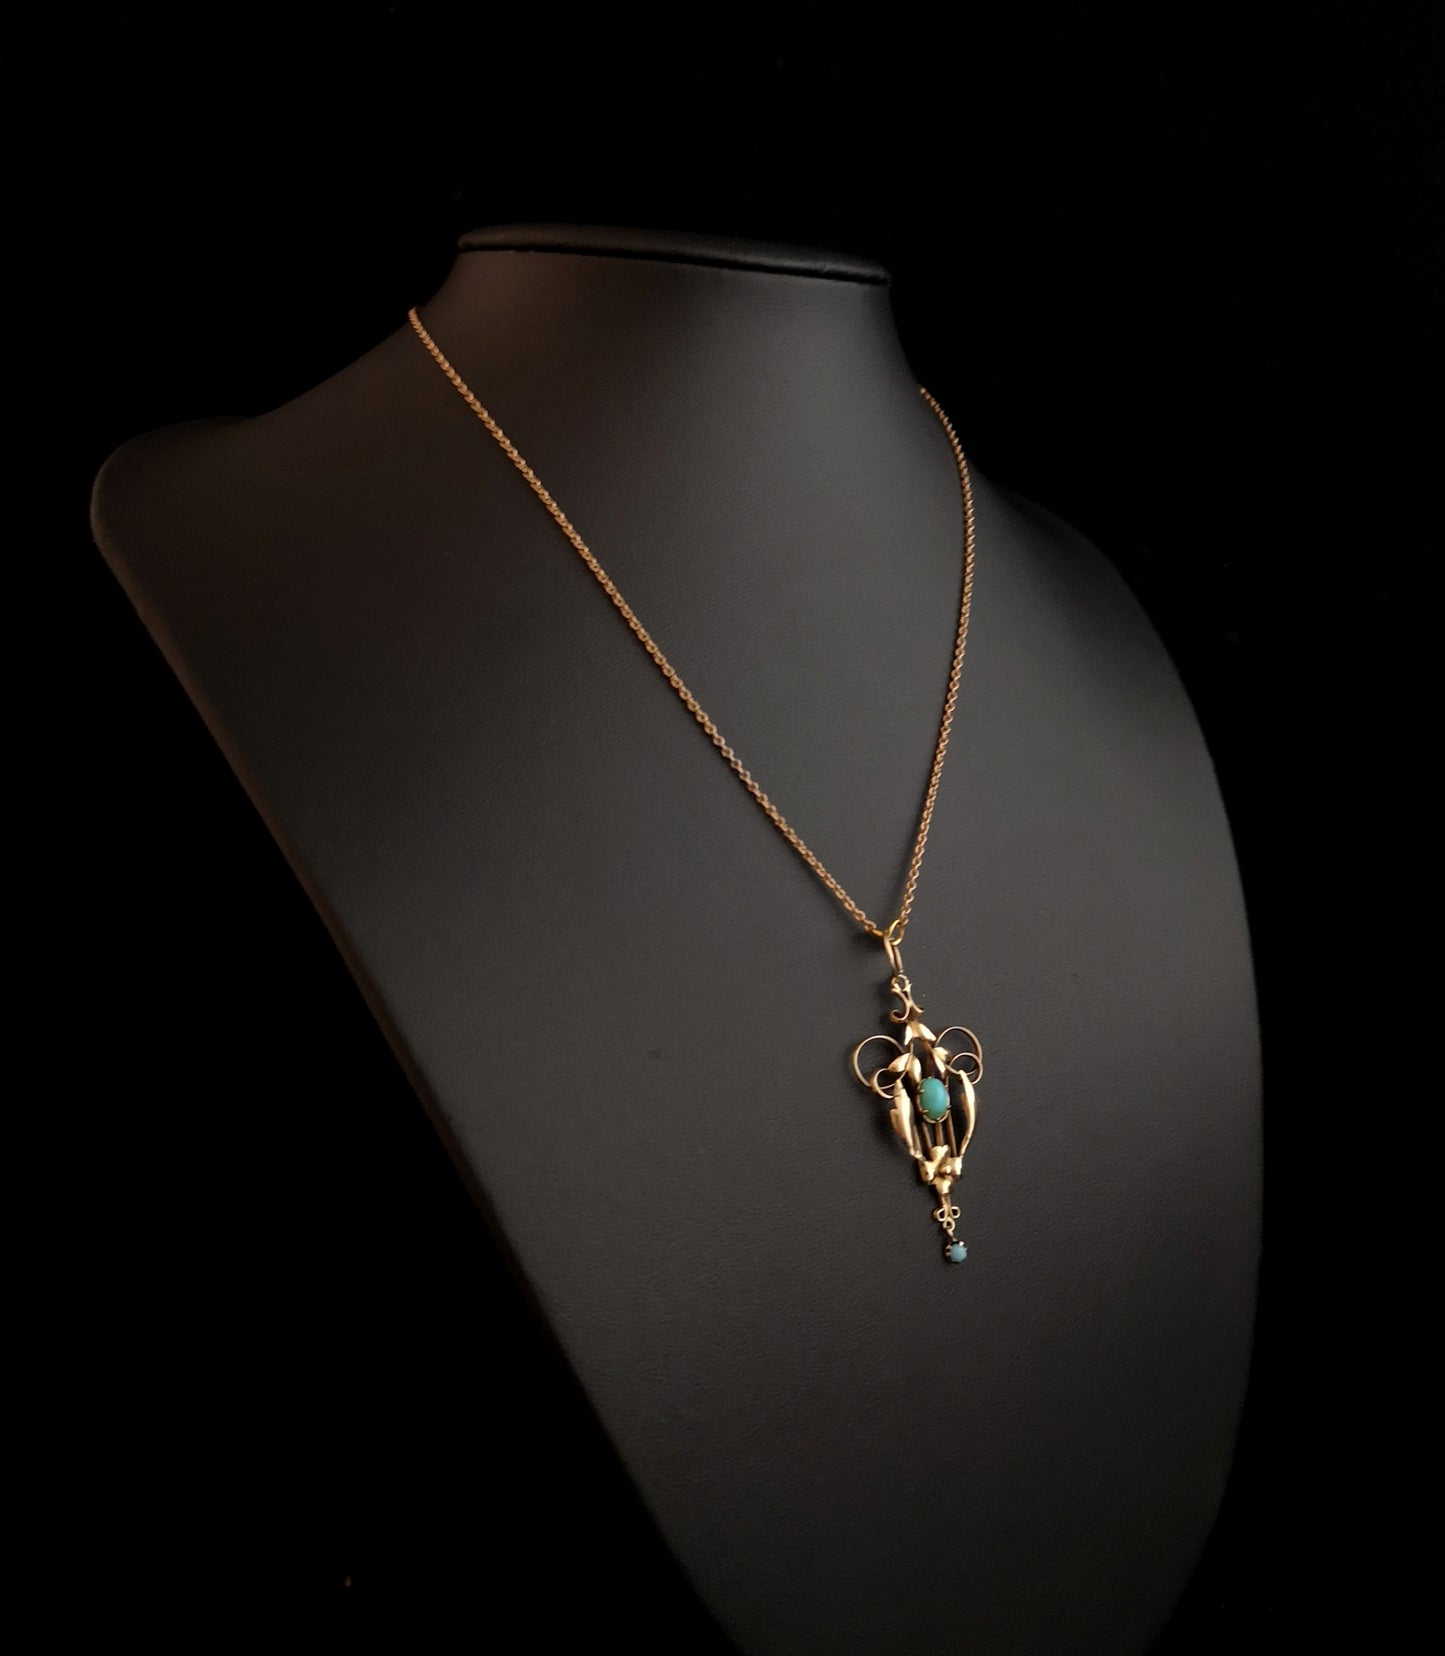 Art Nouveau turquoise lavalier pendant, 9ct gold necklace